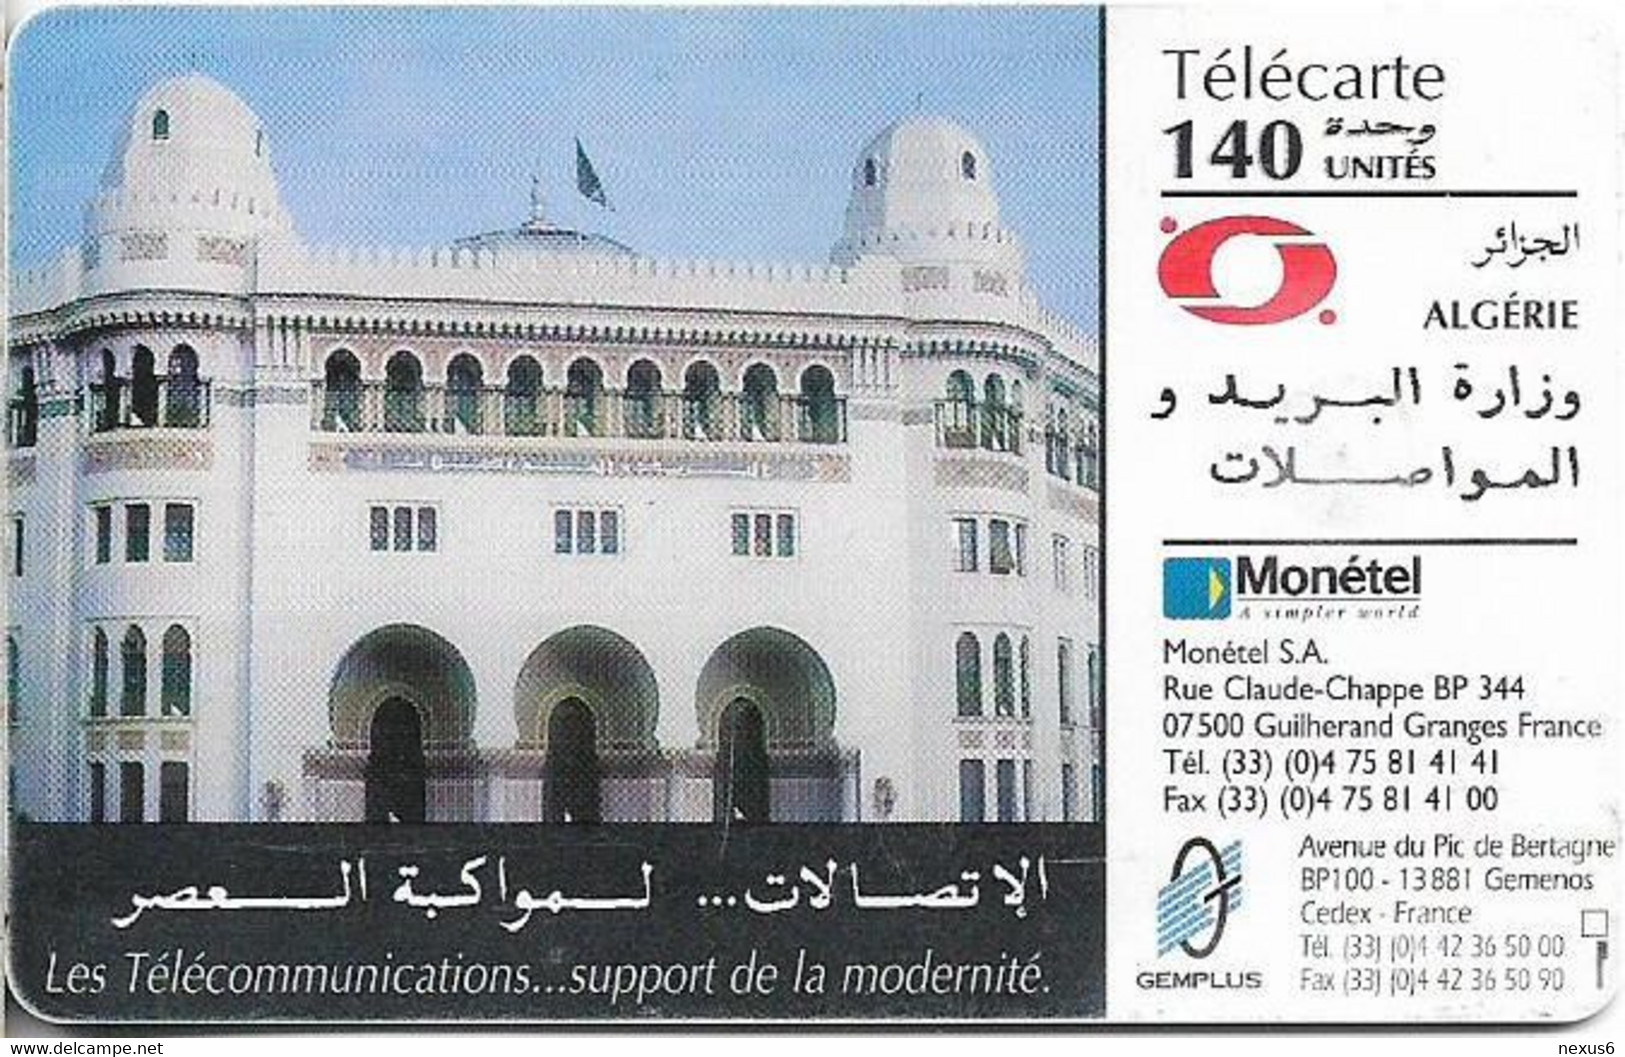 Algeria - PTT-Monetel - Central Post Office, Gem1B Not Symmetr. White/Gold, 1996, 140Units, Used - Algeria